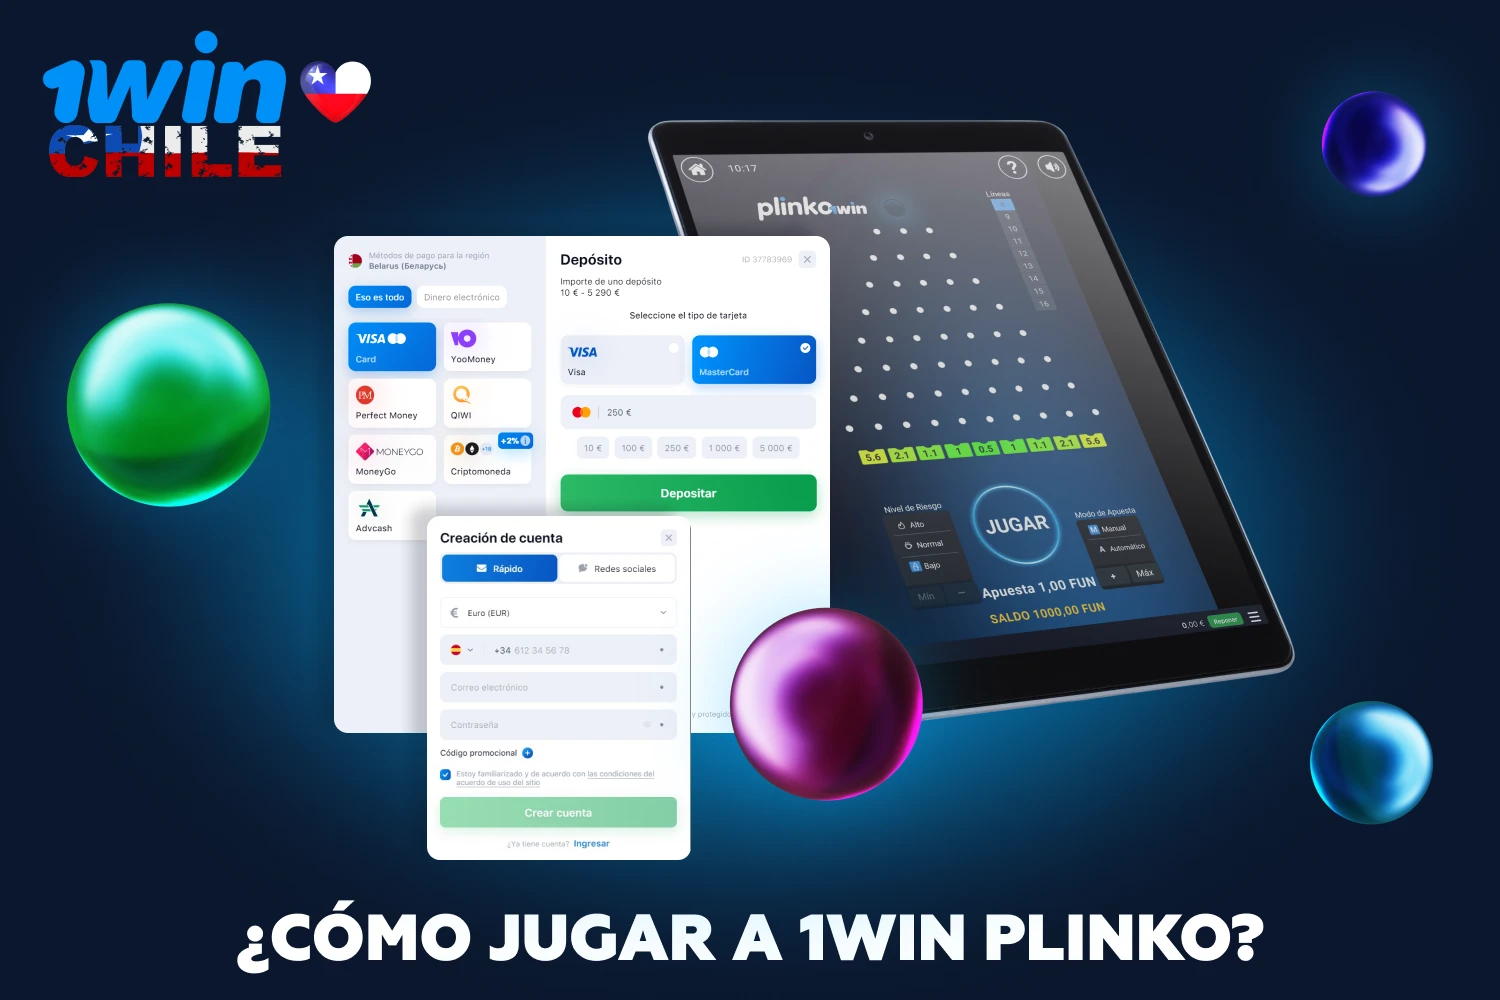 Para jugar a 1win Plinko, los jugadores de Chile deben registrarse, depositar e iniciar el juego